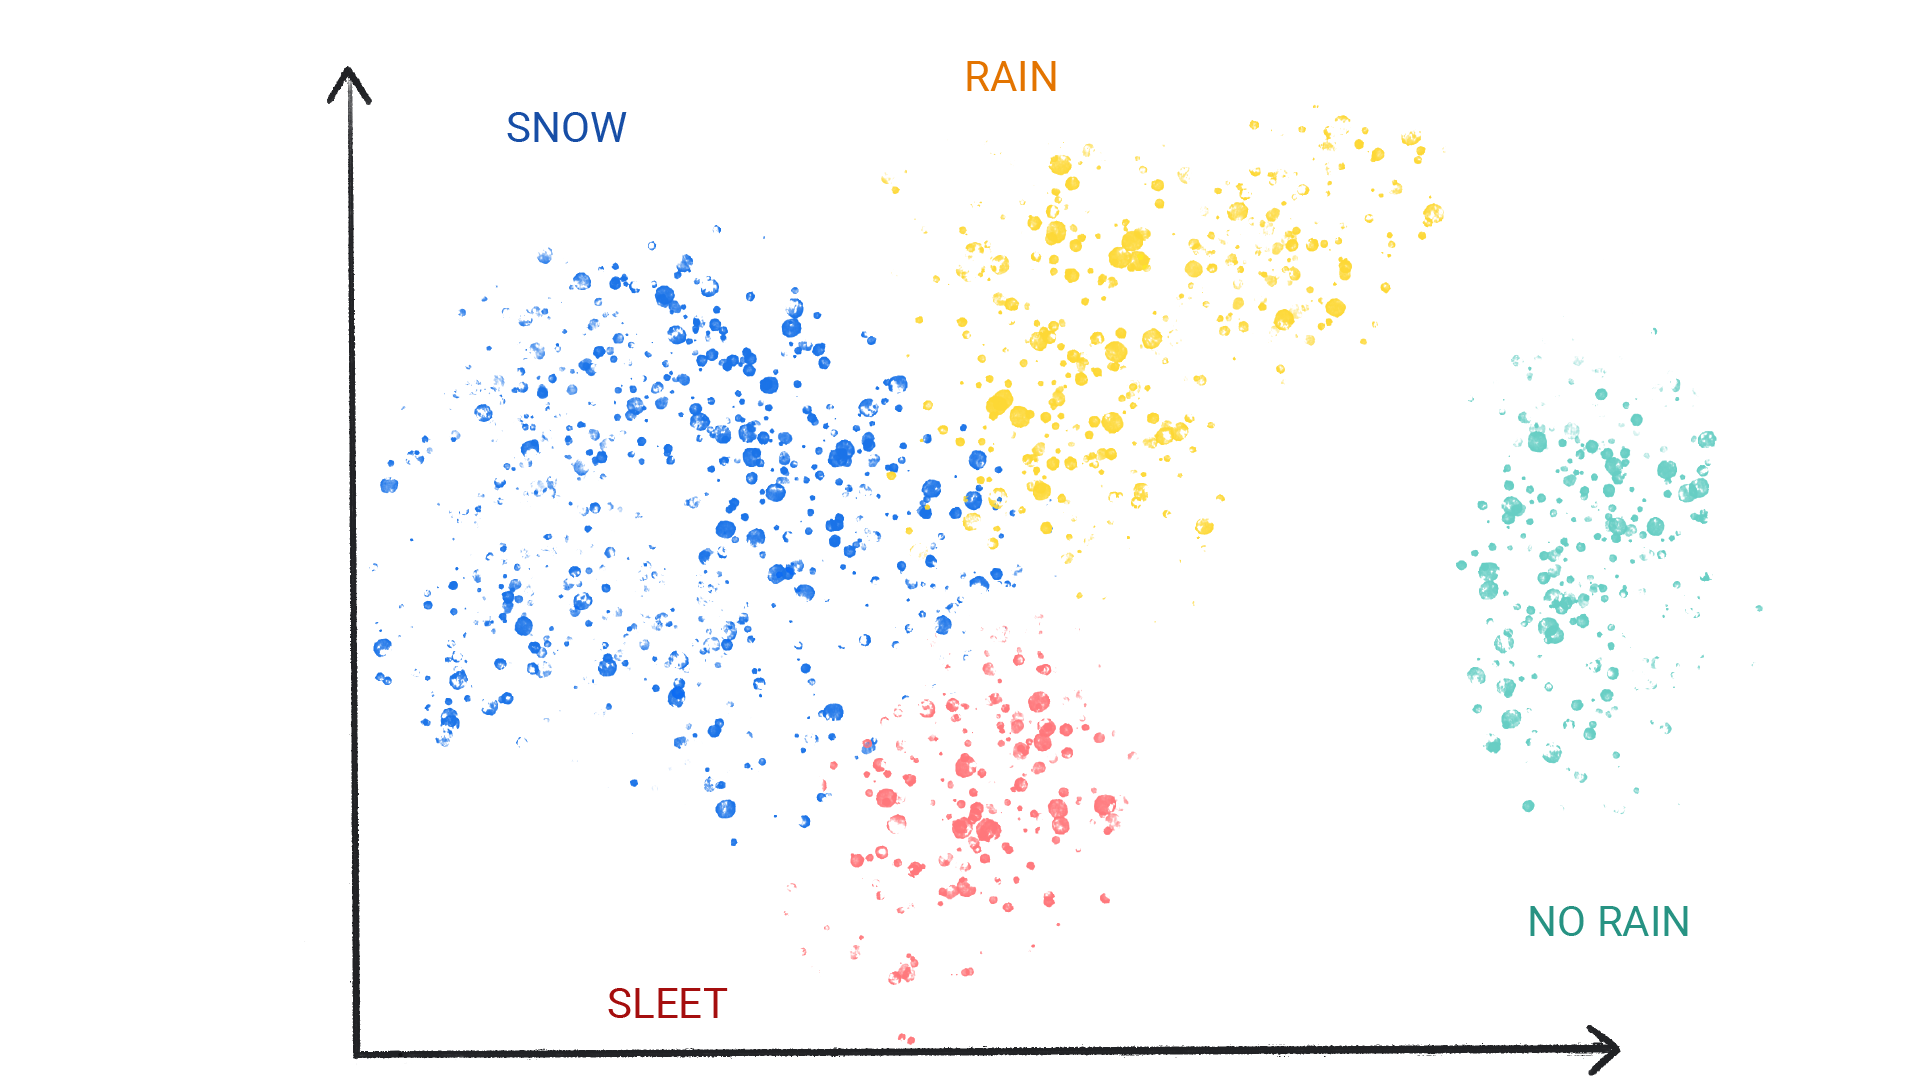 Ein Bild mit farbigen Punkten in Clustern, die als „Schnee“, „Regen“, „Hagel“ oder „Kein Regen“ bezeichnet sind.